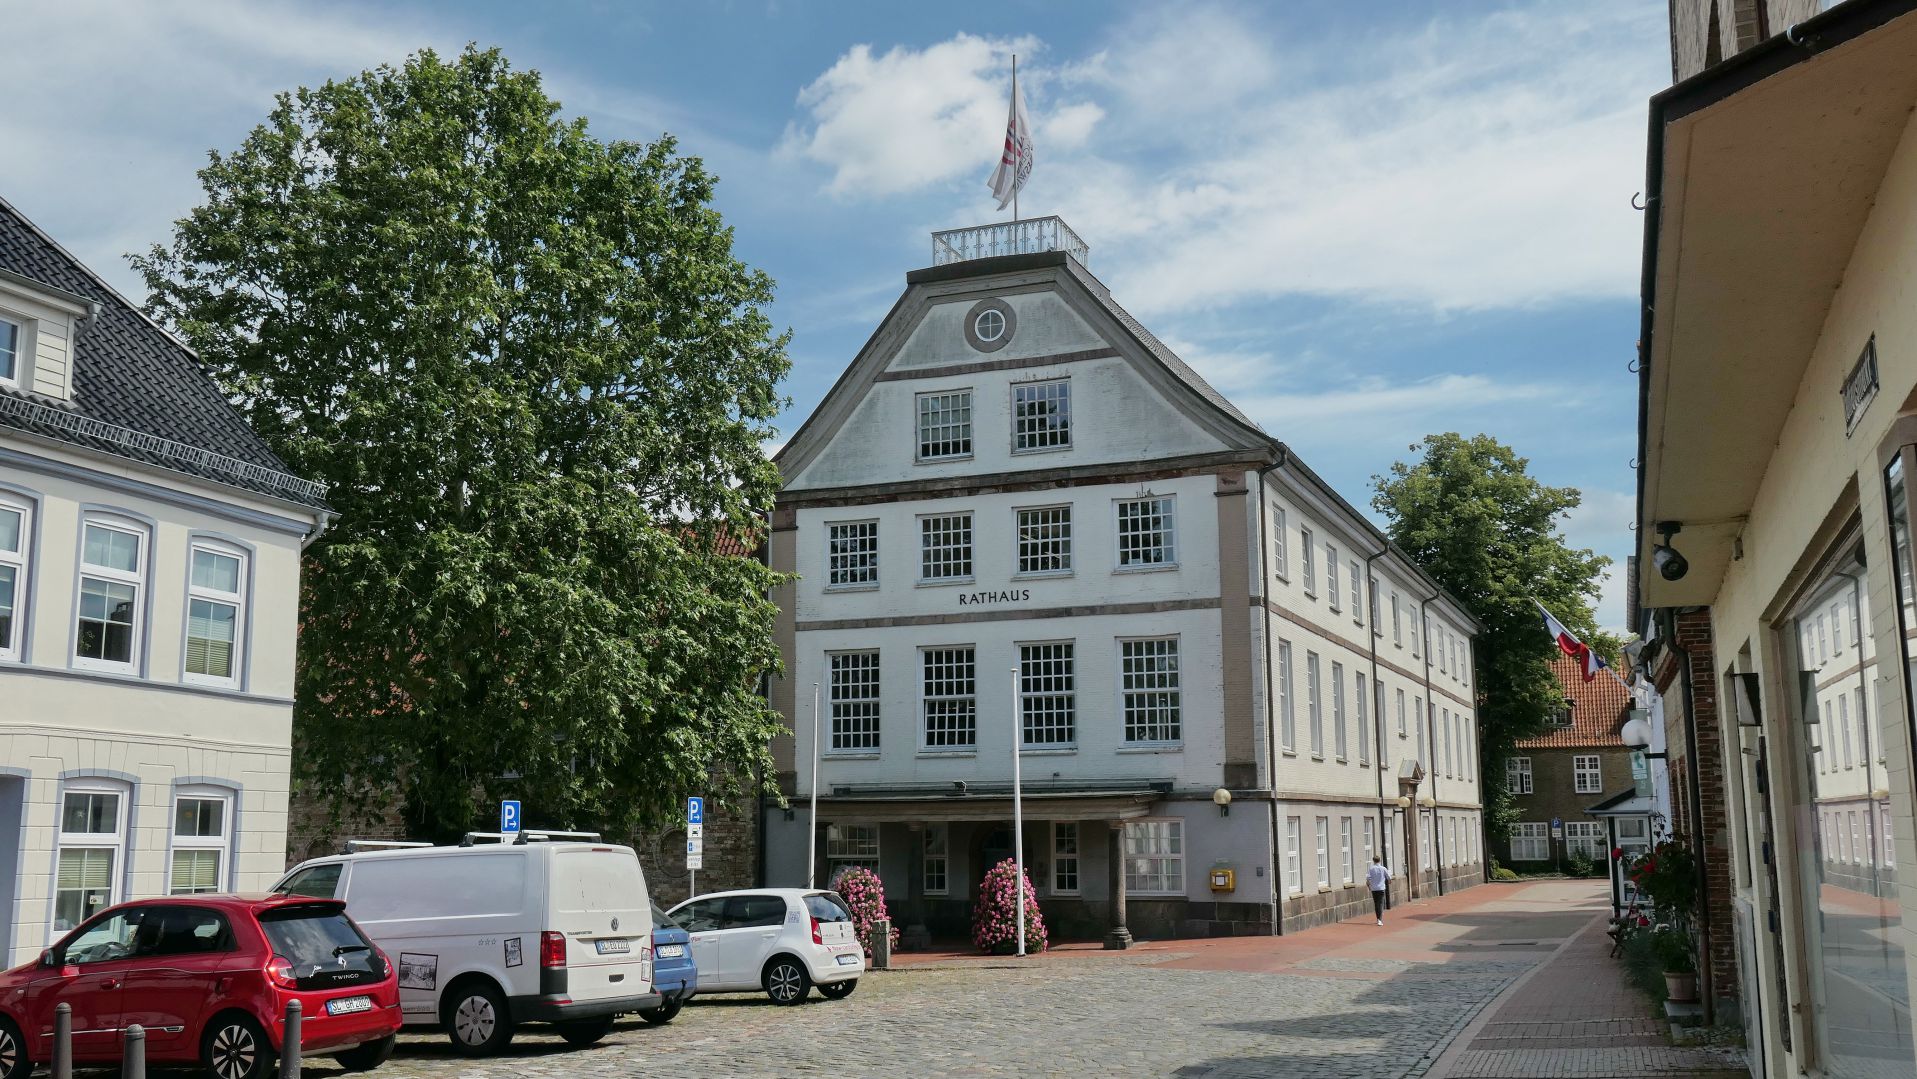 SCHLESWIG - wir unternehmen einen Abstecher zum klassizistischen Rathaus von 1795 ganz in der Nähe